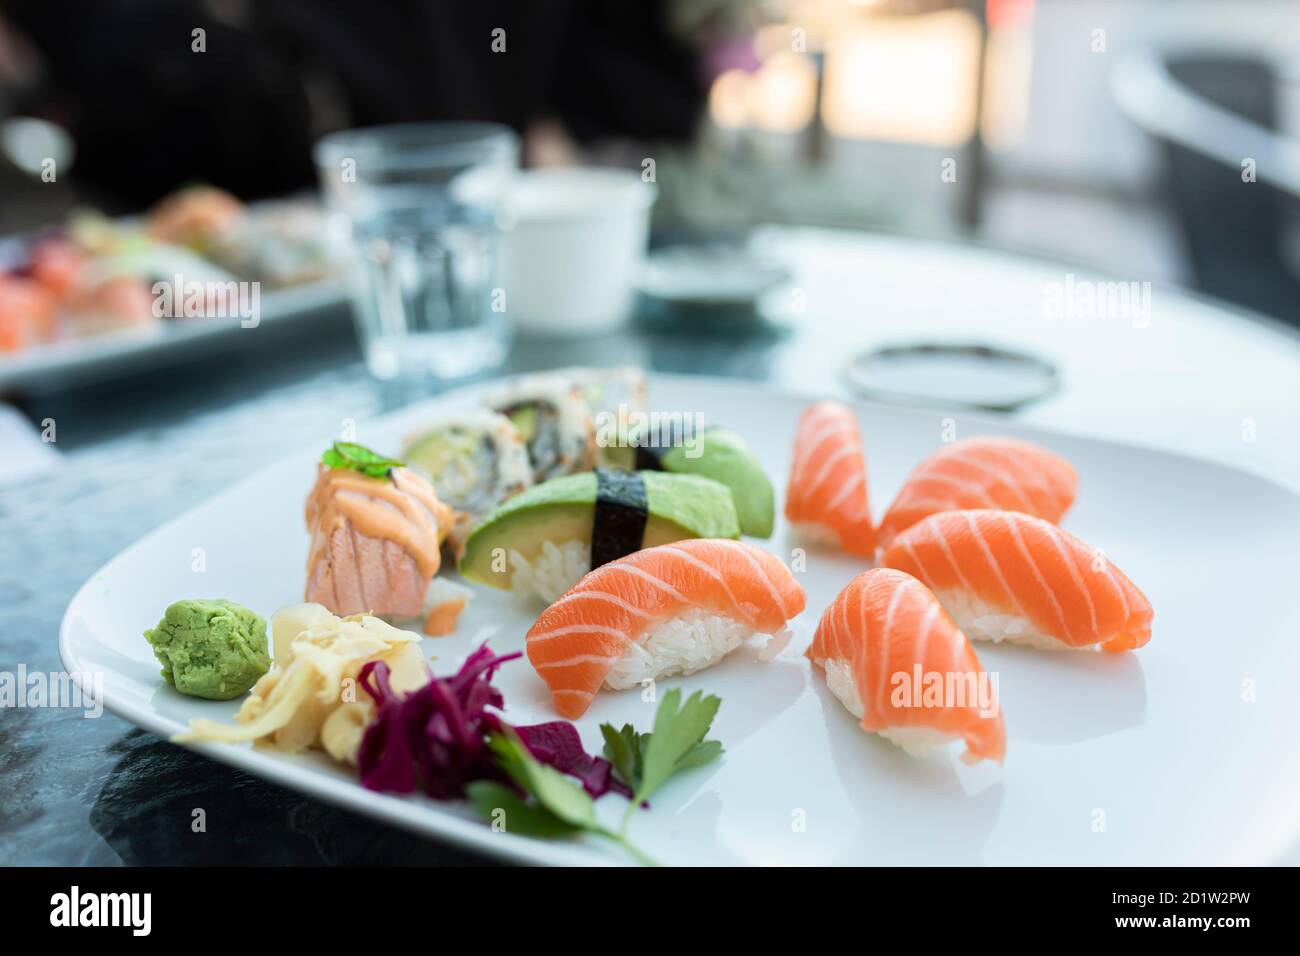 Une assiette de sushis sur une table à l'extérieur dans un restaurant. L'assiette contient des sushis nigiri au saumon, des sushis nigiri à l'avocat et des petits pains californiens. Une alimentation saine Banque D'Images